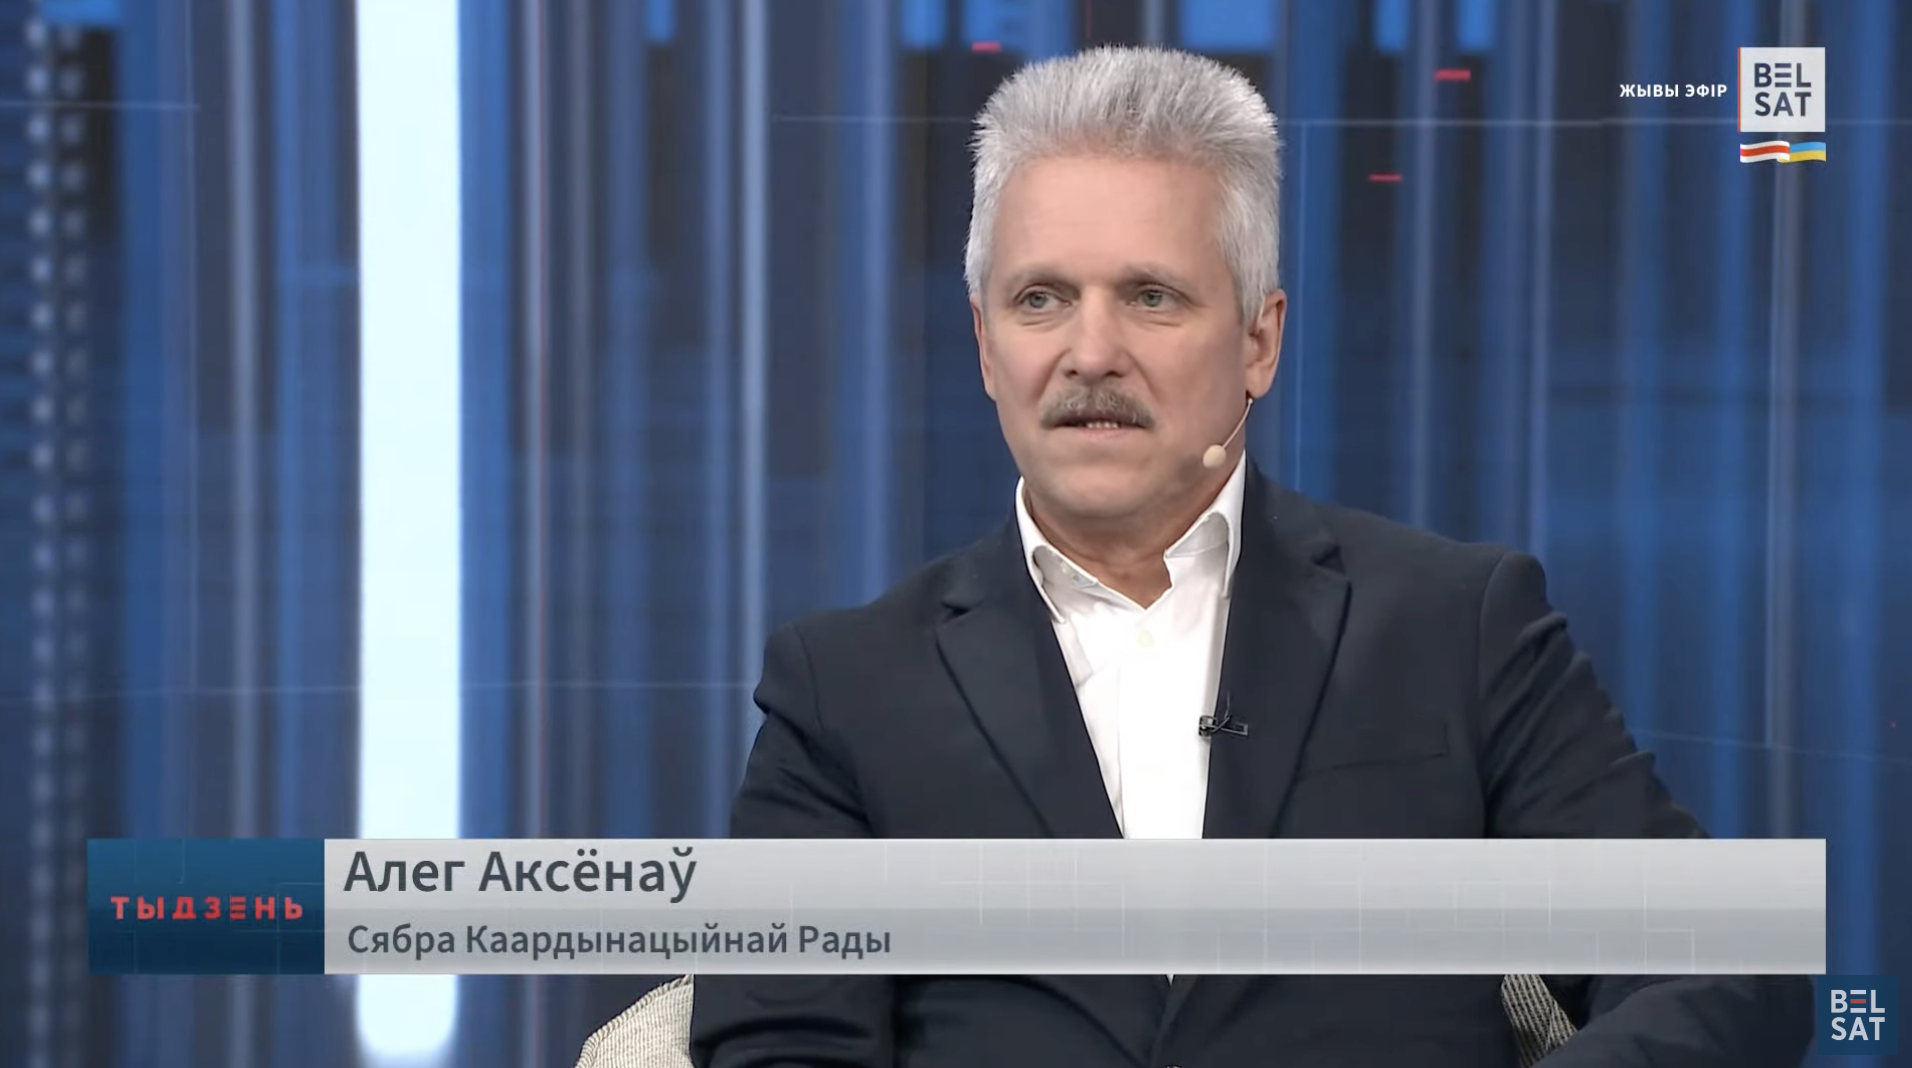 Олег Аксёнов в эфире «Белсат TV» подписан как член Координационного совета, хотя он опроверг это в конце интервью. Скриншот YouTube